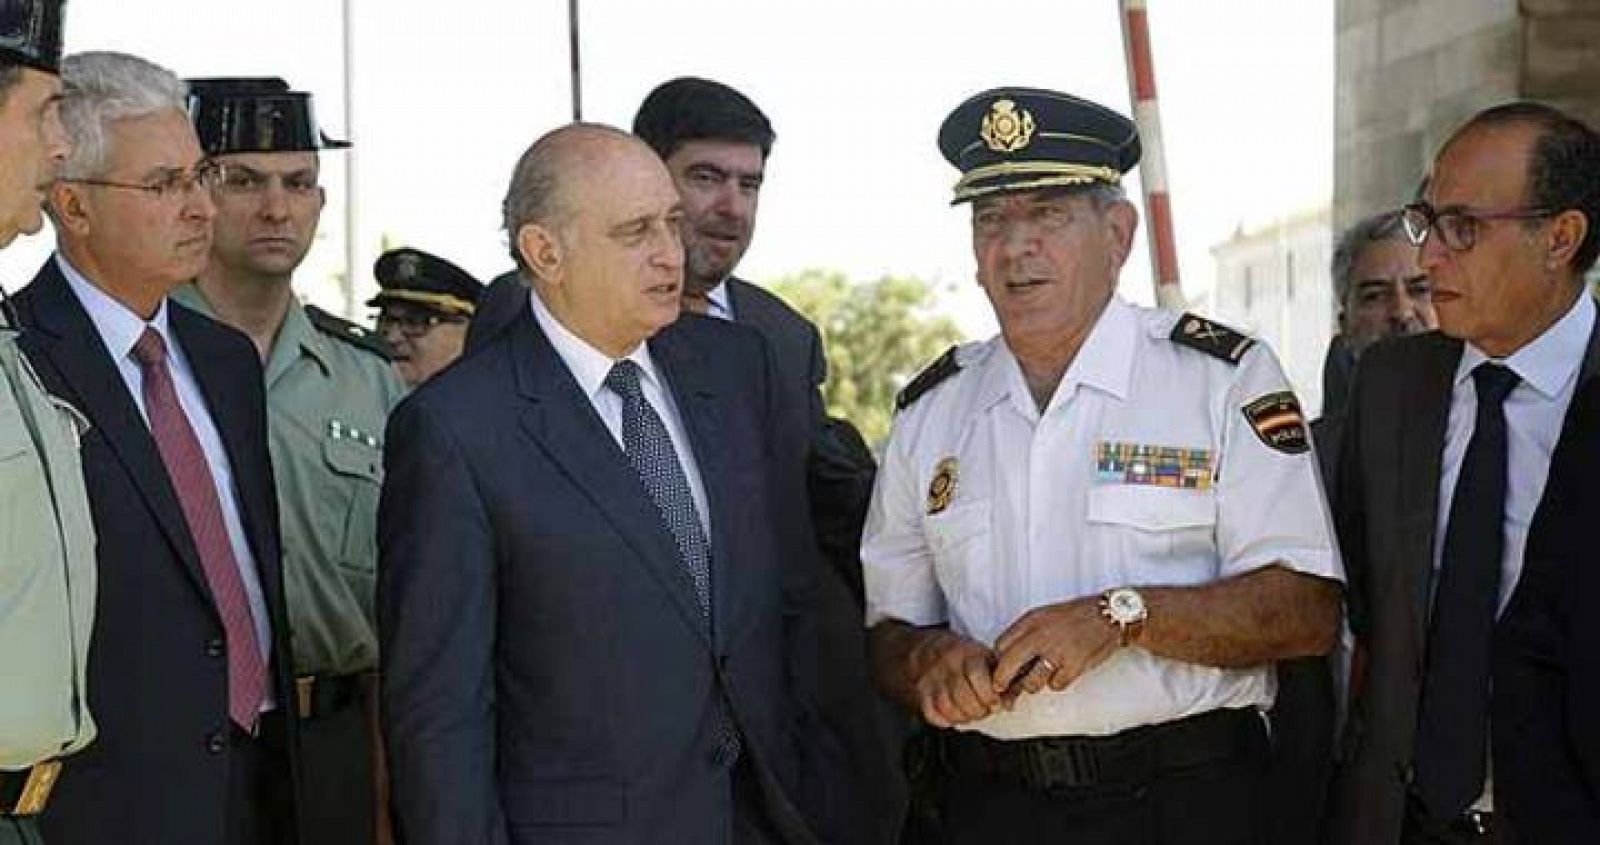 El ministro del Interior, Jorge Fernández Díaz, acompañado del delegado del Gobierno en Melilla, Abdelmalik El Barkani